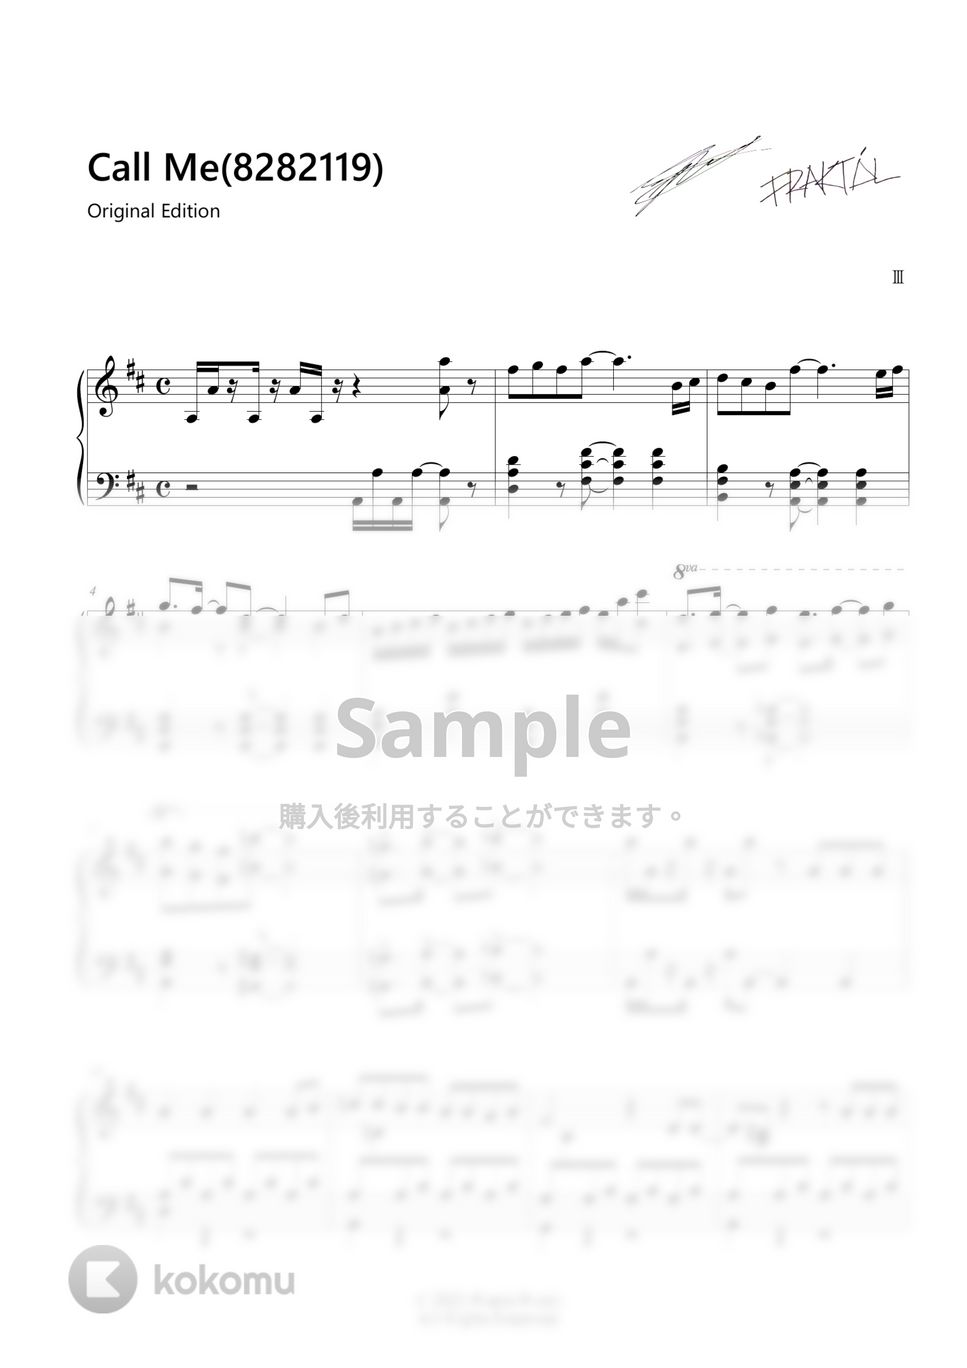 OMEGA Ⅲ - Call Me (8282119) [IMITATION X OMEGA Ⅲ] Original Edition by KOKOMU Original